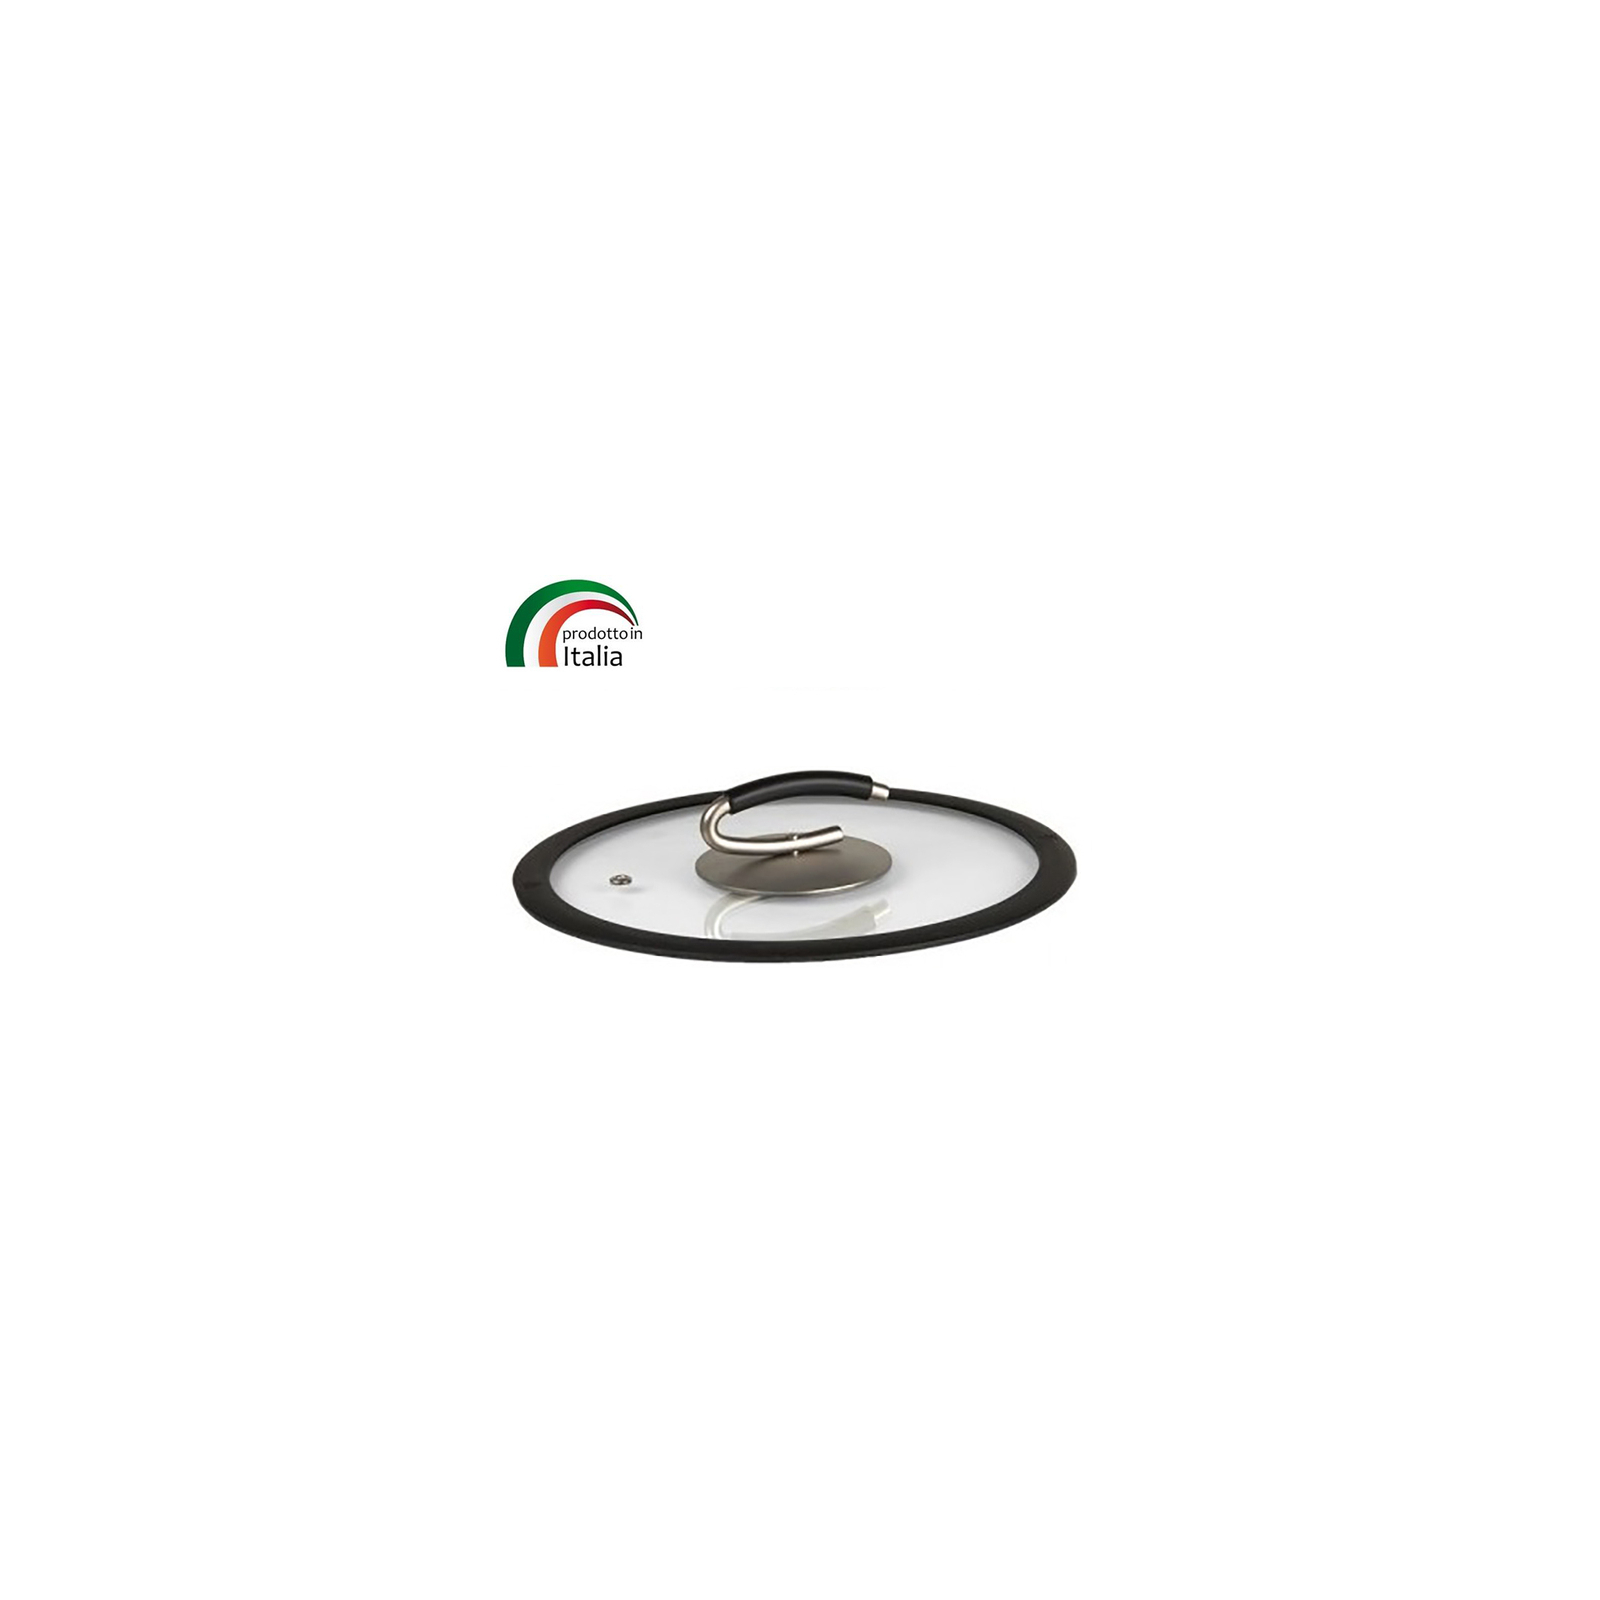 Крышка для посуды TVS Gran Gurmet 20 см (9465120003C602)